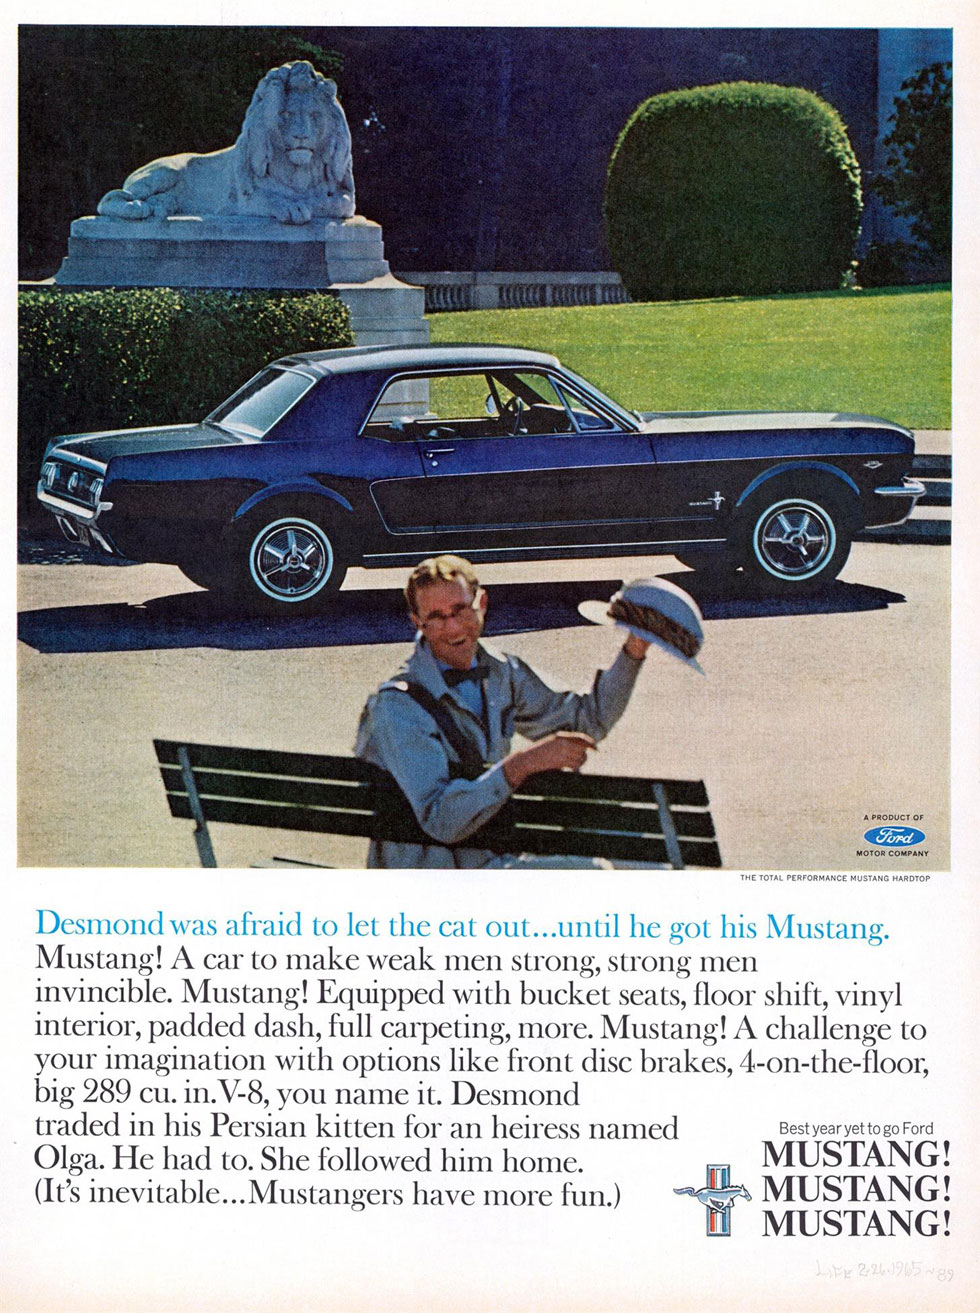 Publicité : la Ford Mustang dans les années 60